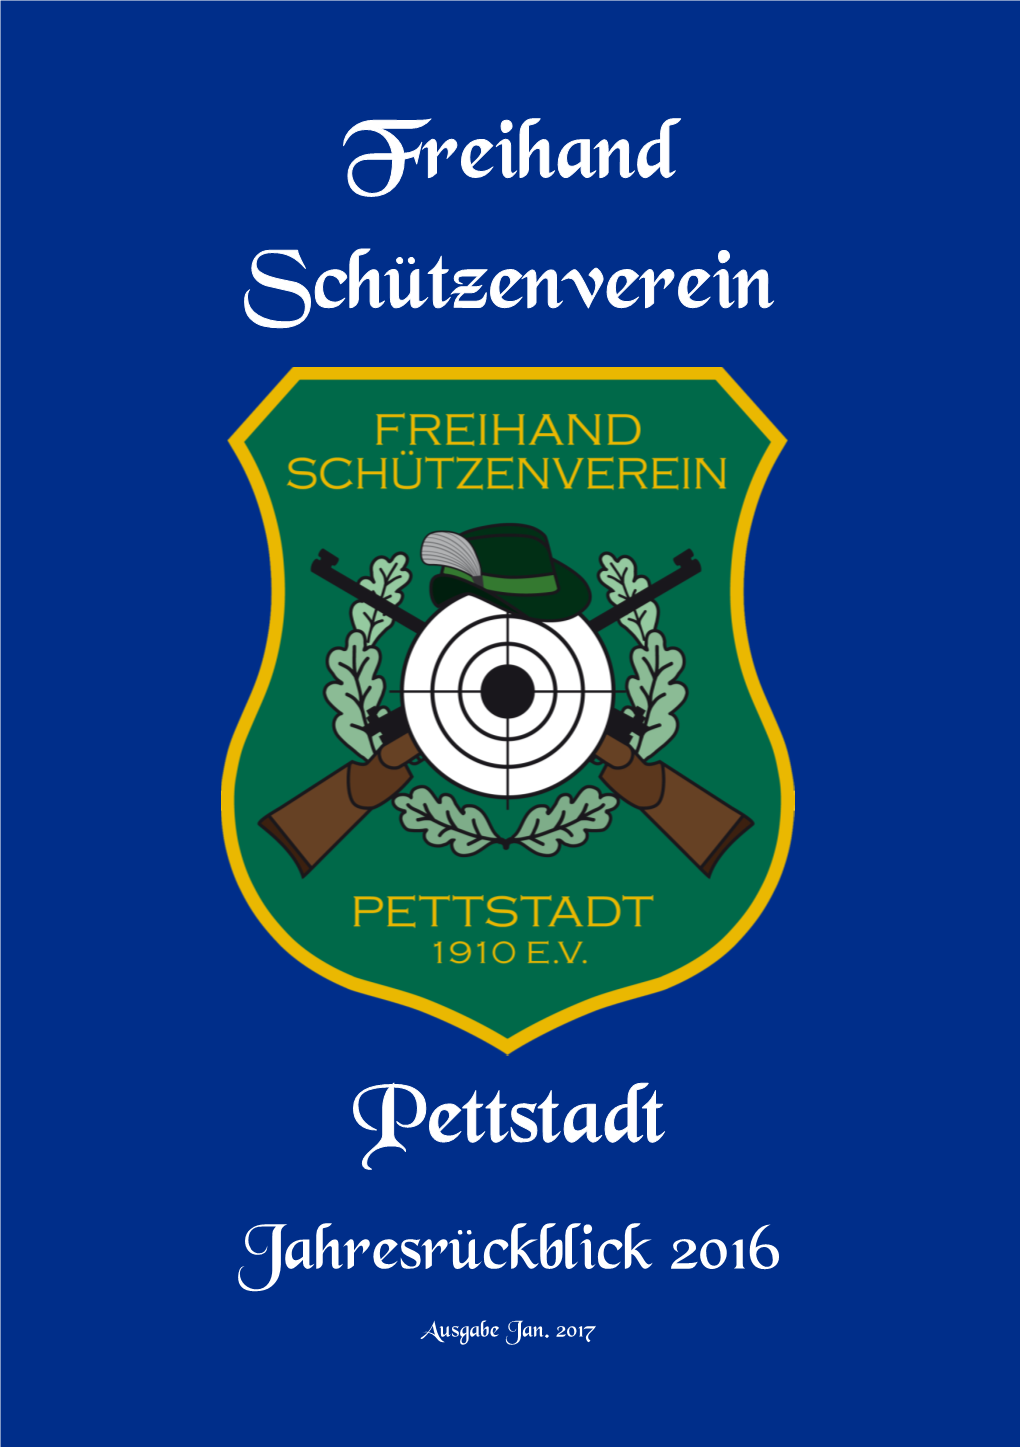 Freihand Schützenverein Pettstadt Ist